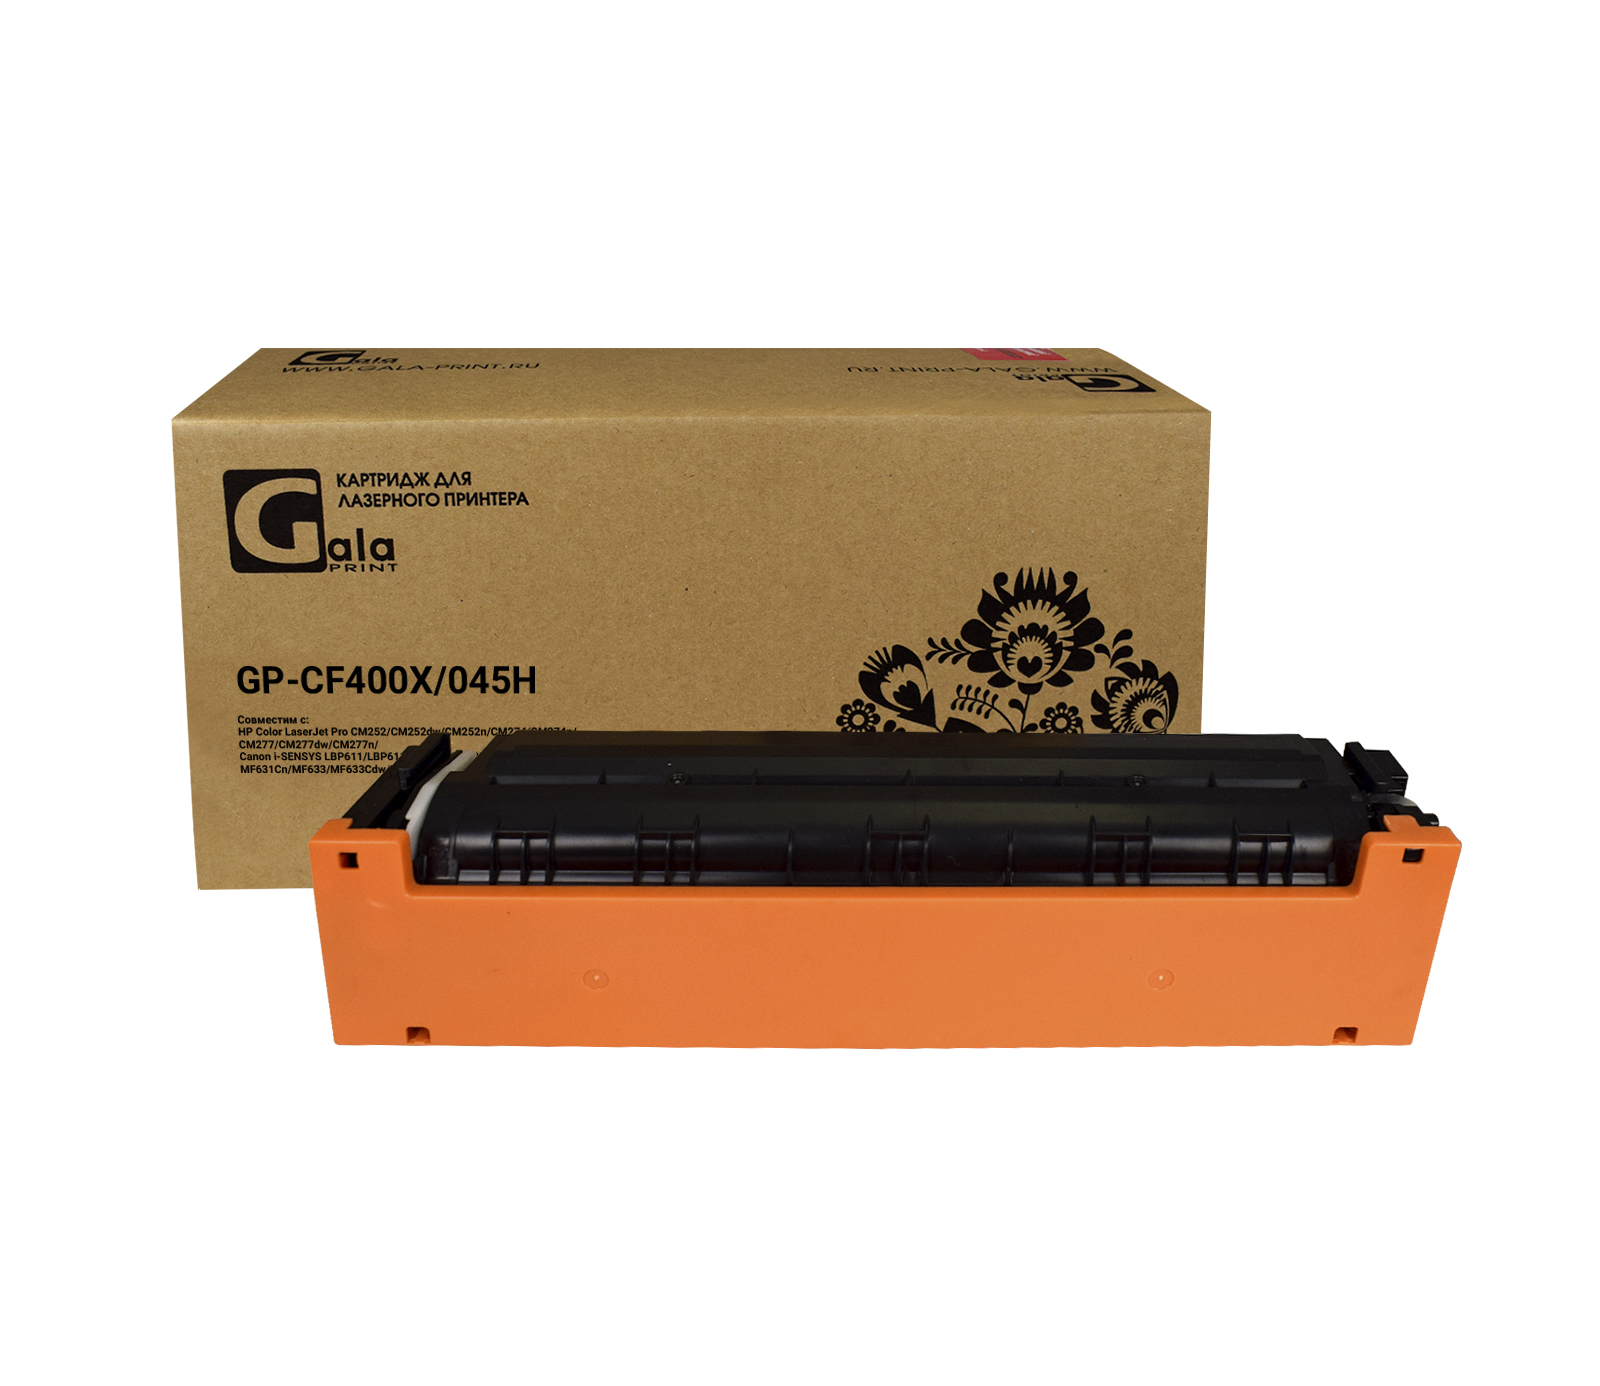 Картридж GP-CF400X №201X для принтеров HP Color LaserJet Pro M252/MFP277 2800 копий Black GalaPrint